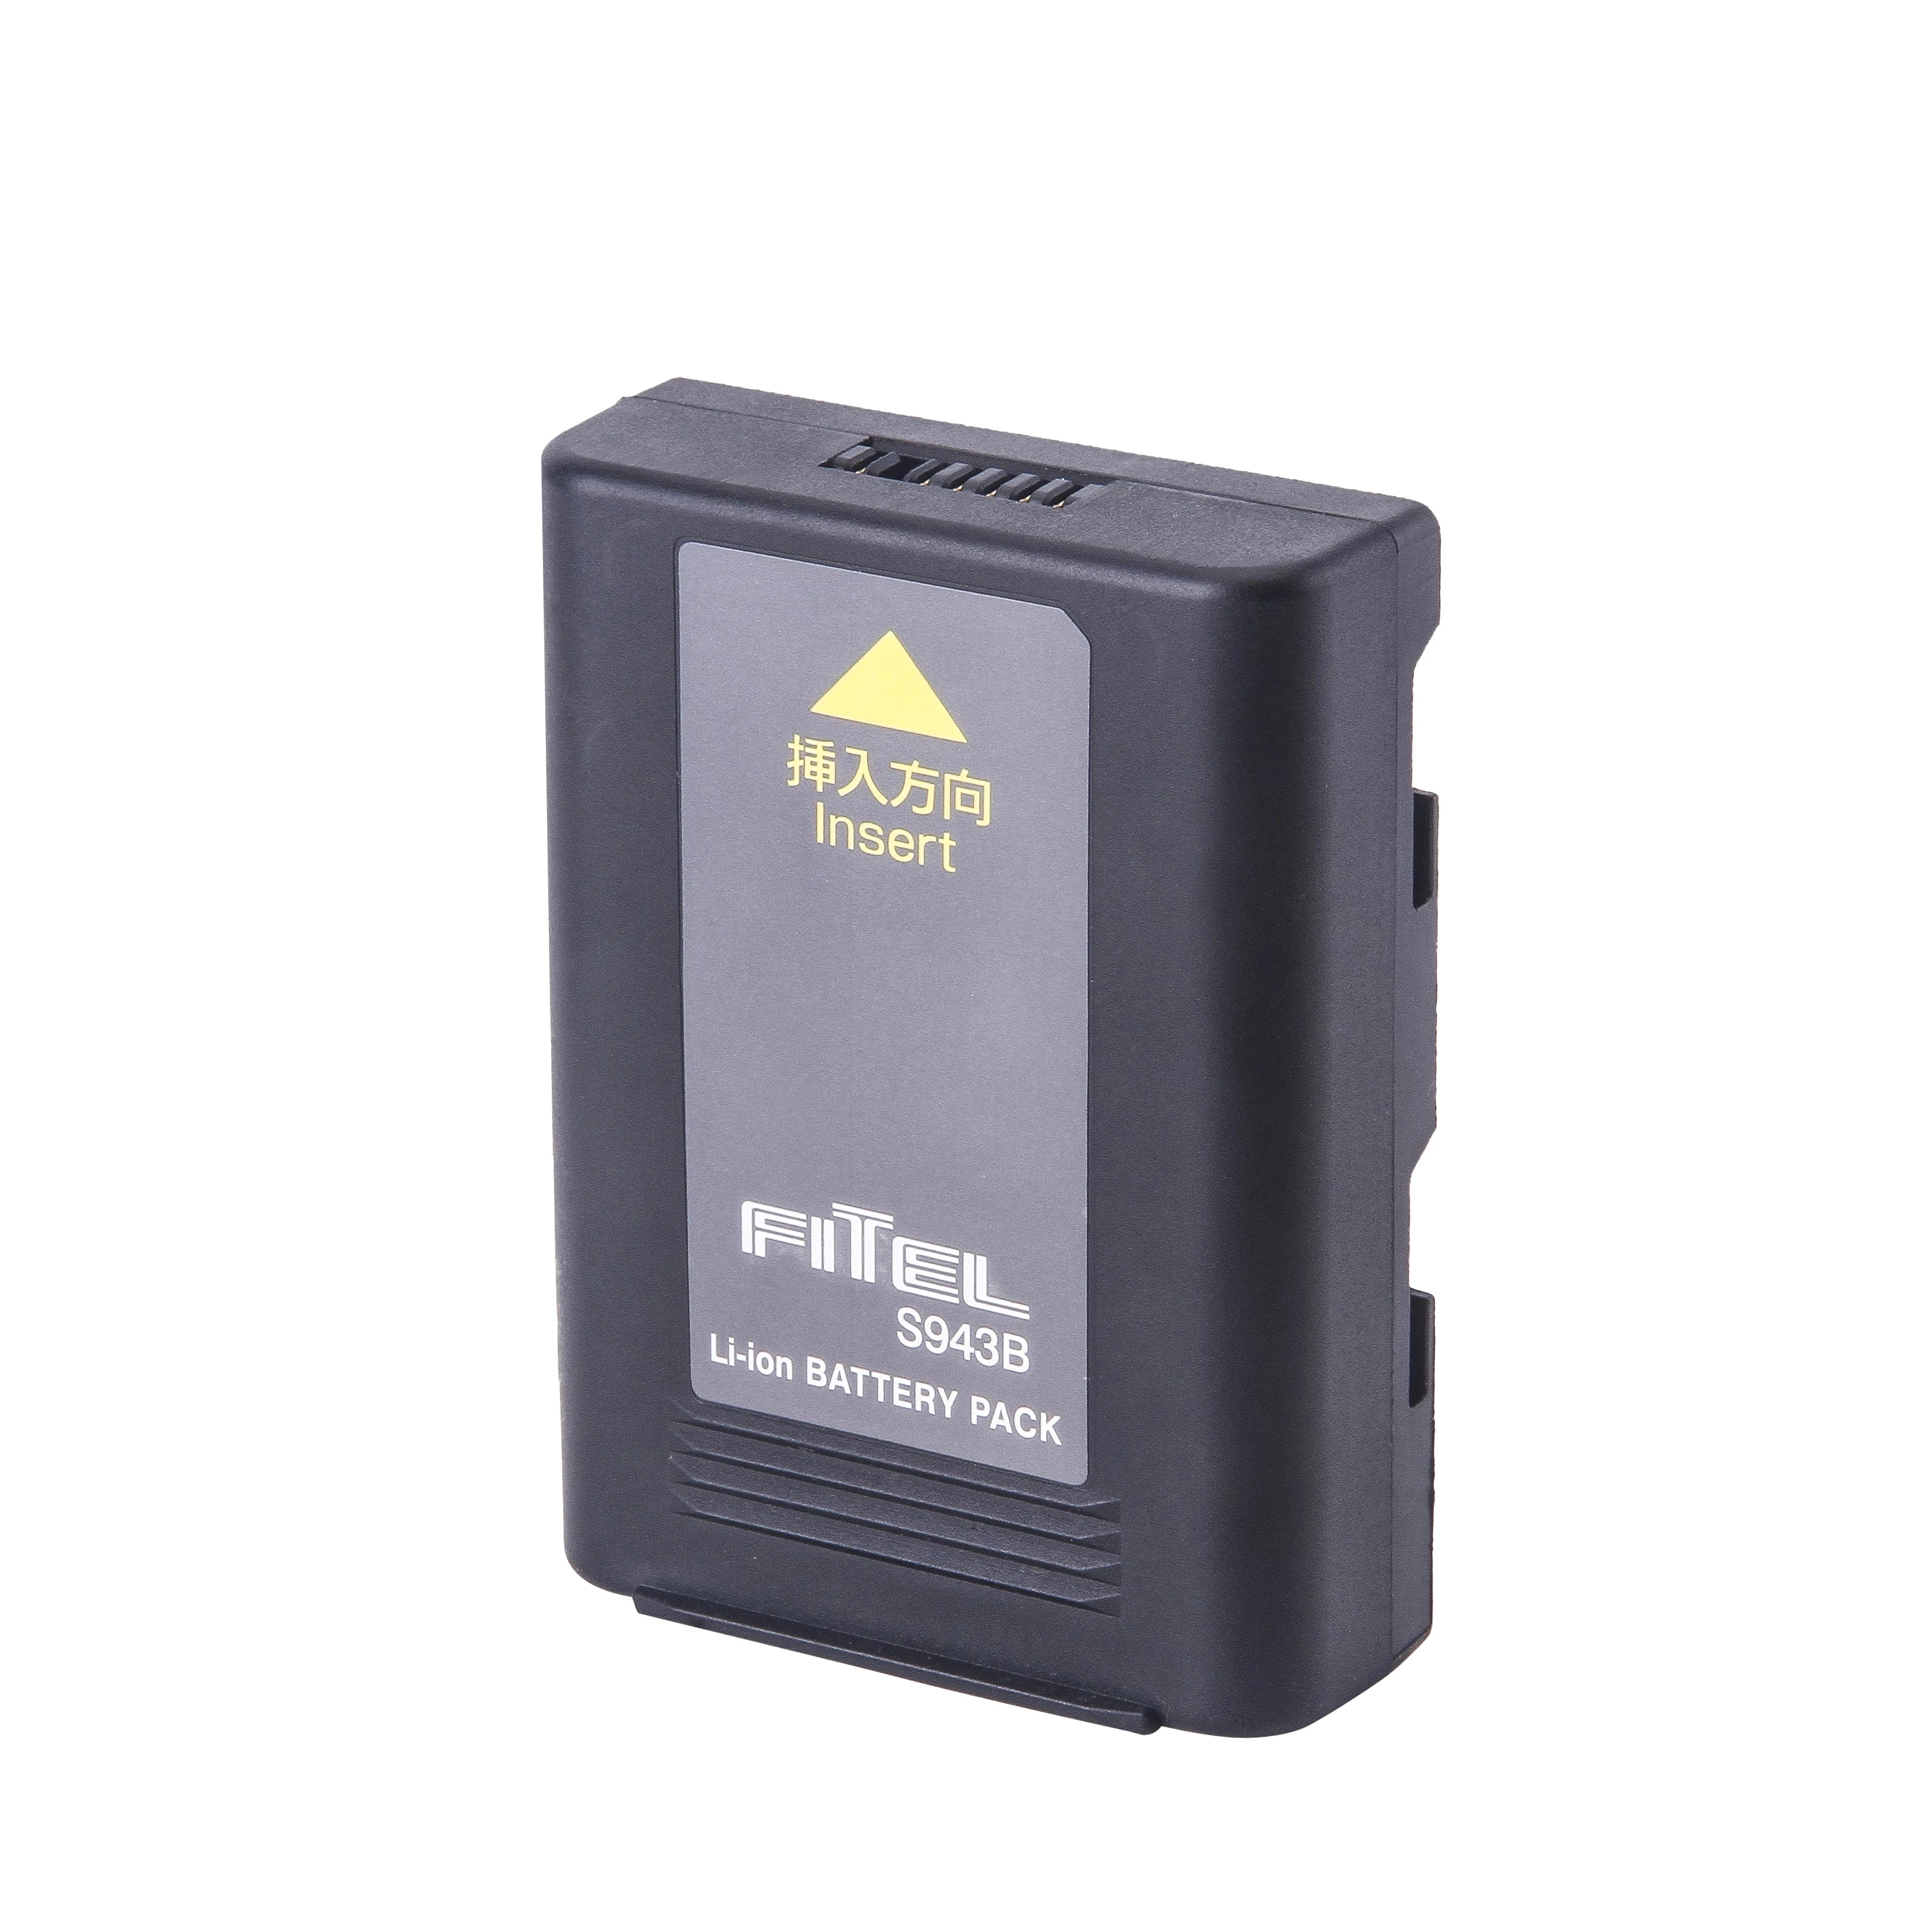 Original Furukawa Fitel S943B S178A battery for S153 S153A S177 S178 S178A S121/S122/S123 Fusion splicer li-ion battery pack